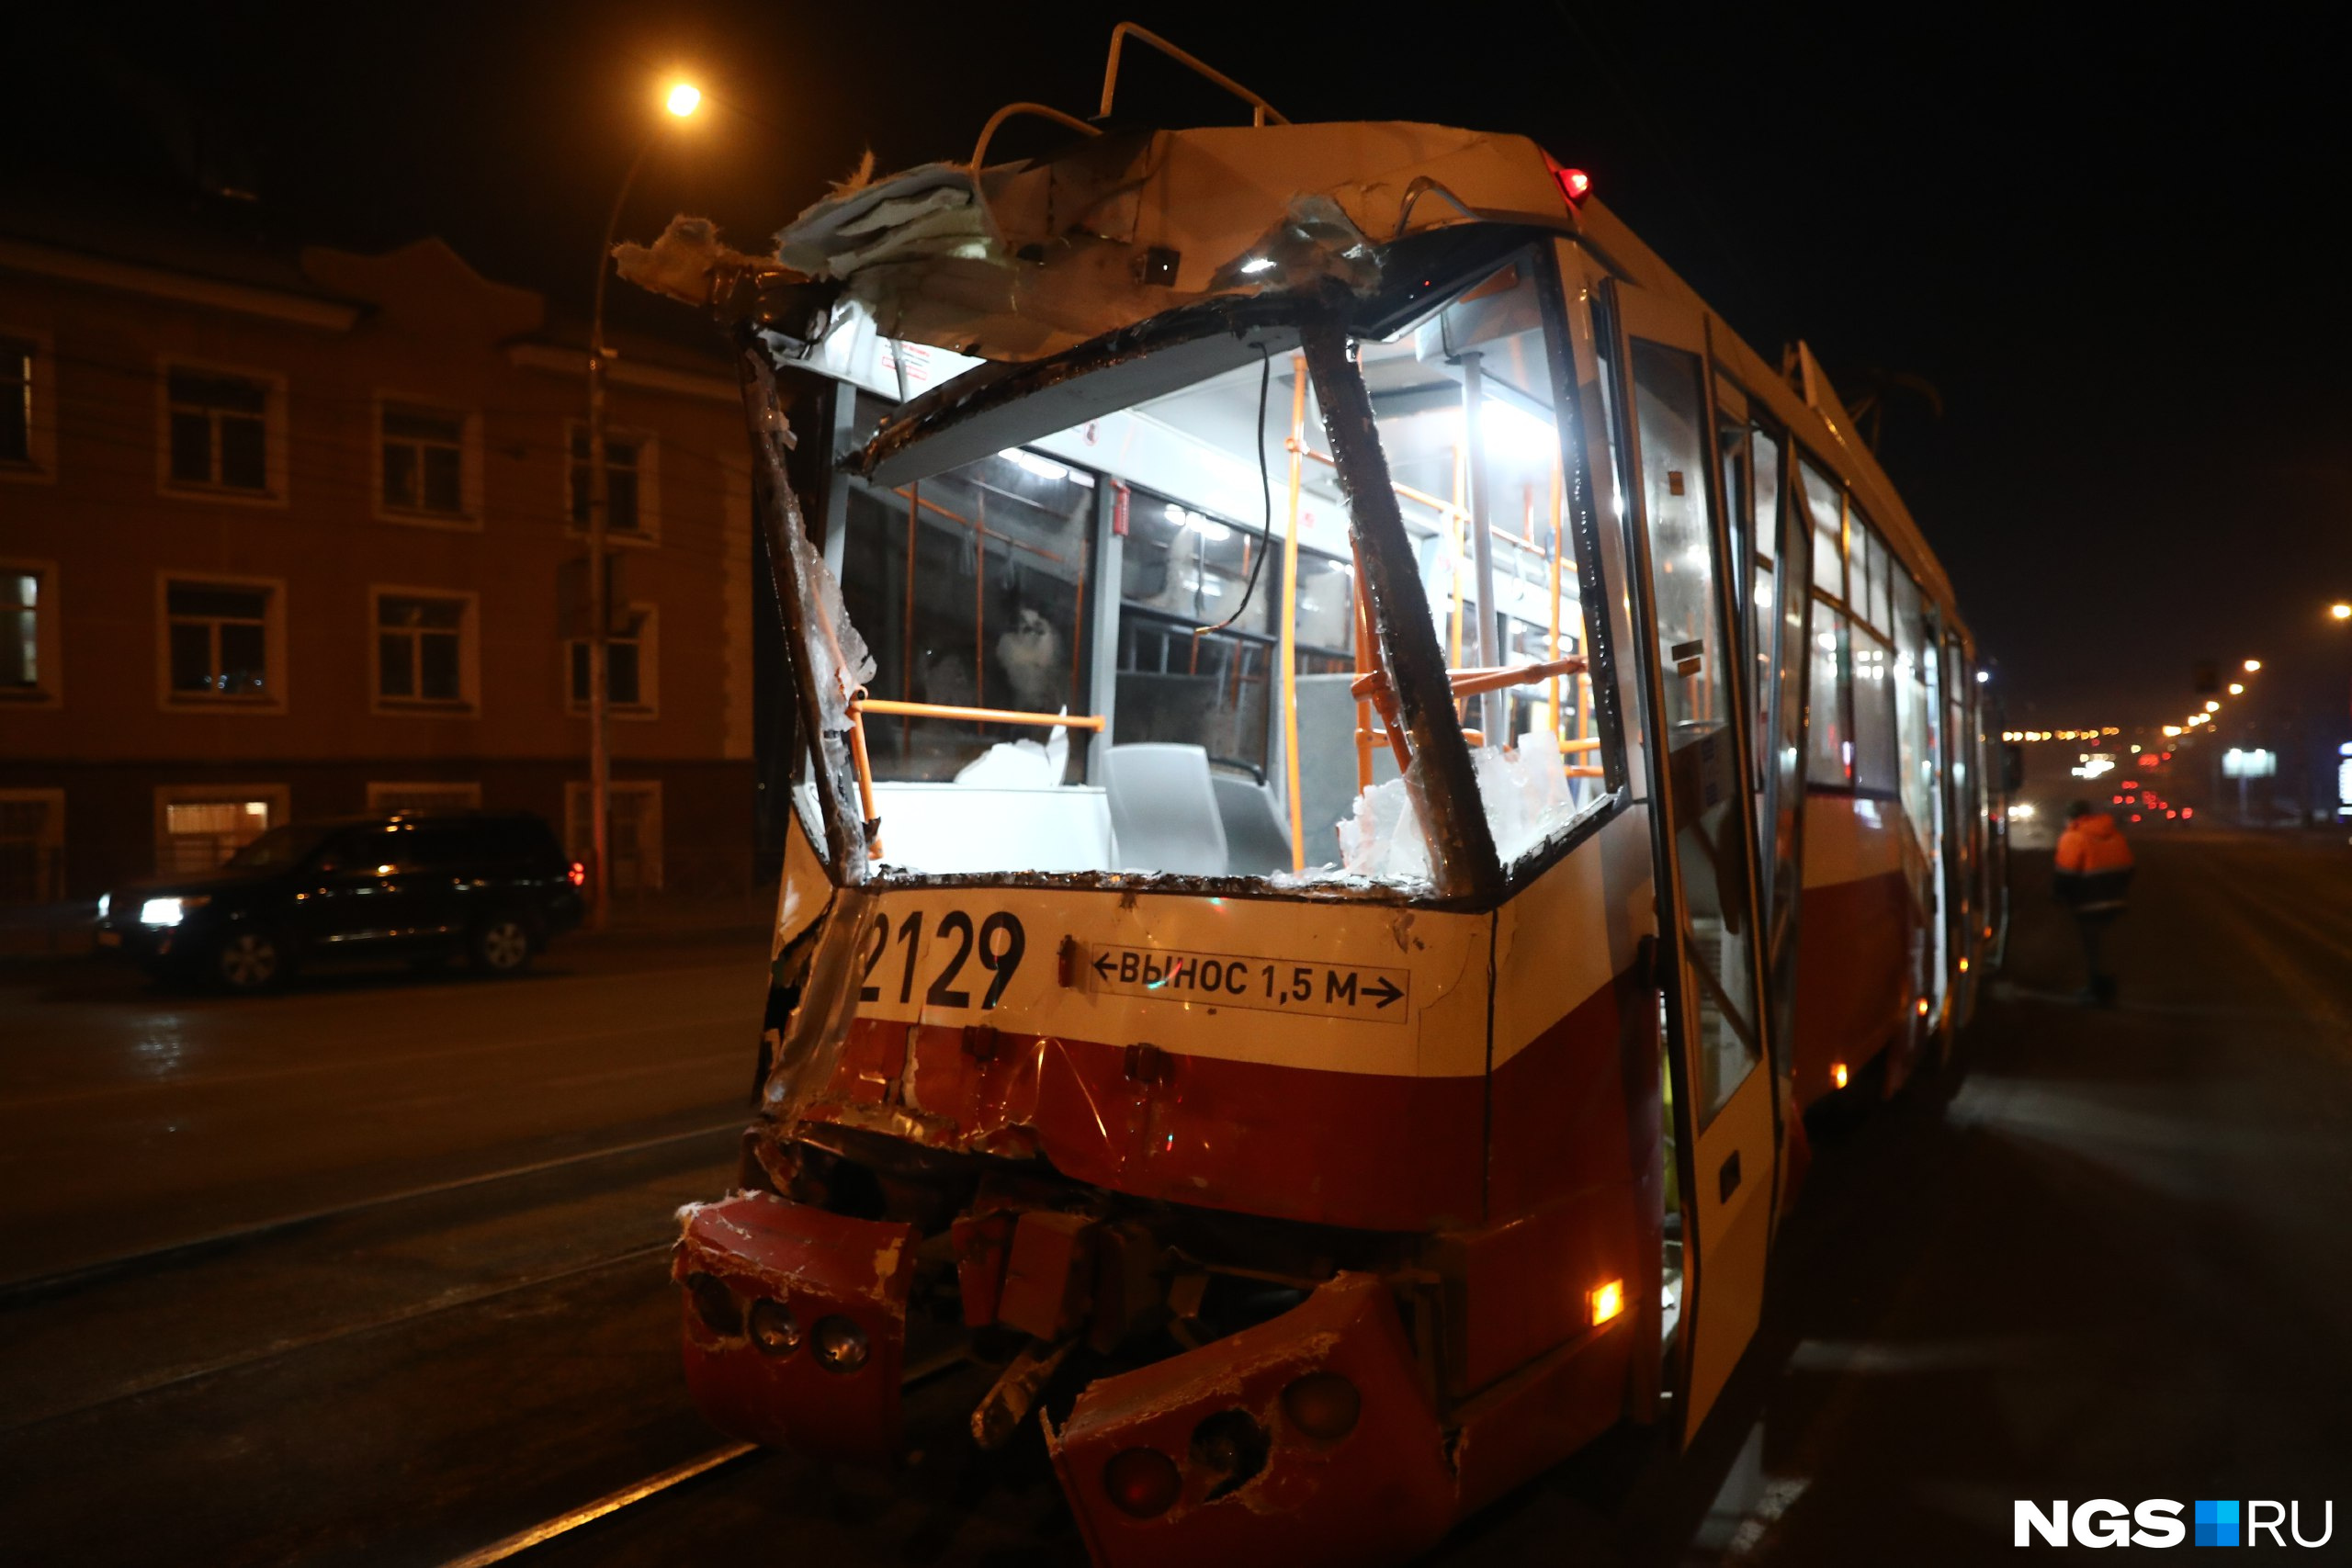 По предварительной информации источника в департаменте транспорта мэрии, на предыдущем перекрестке с Вертковской неизвестный автомобиль подрезал один из трамваев